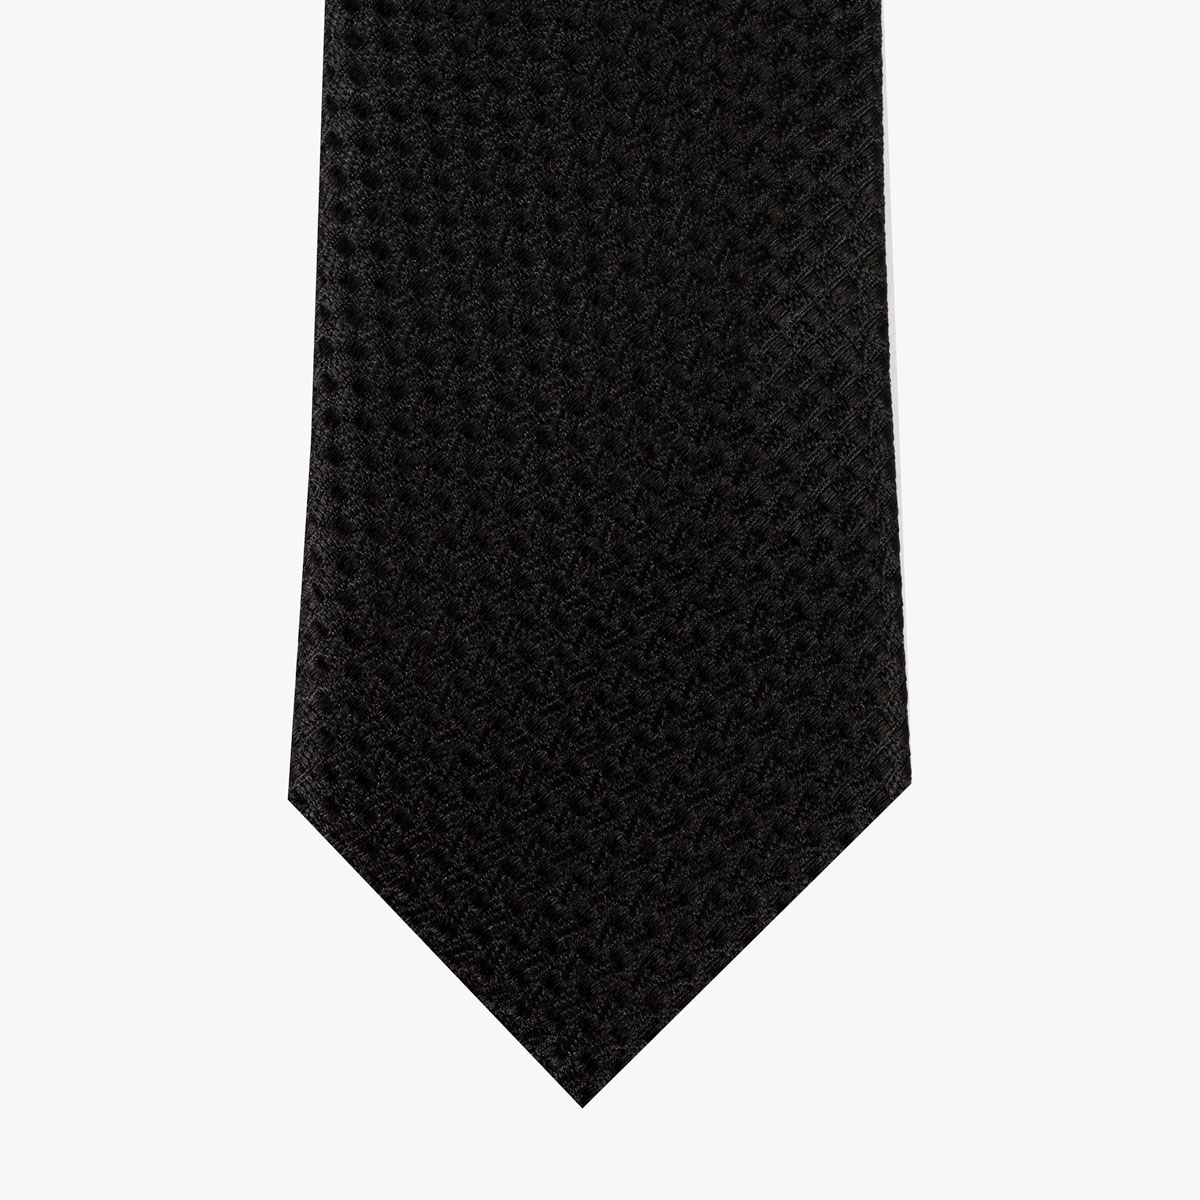 Krawatte mit Muster und Struktur in blau - Slim